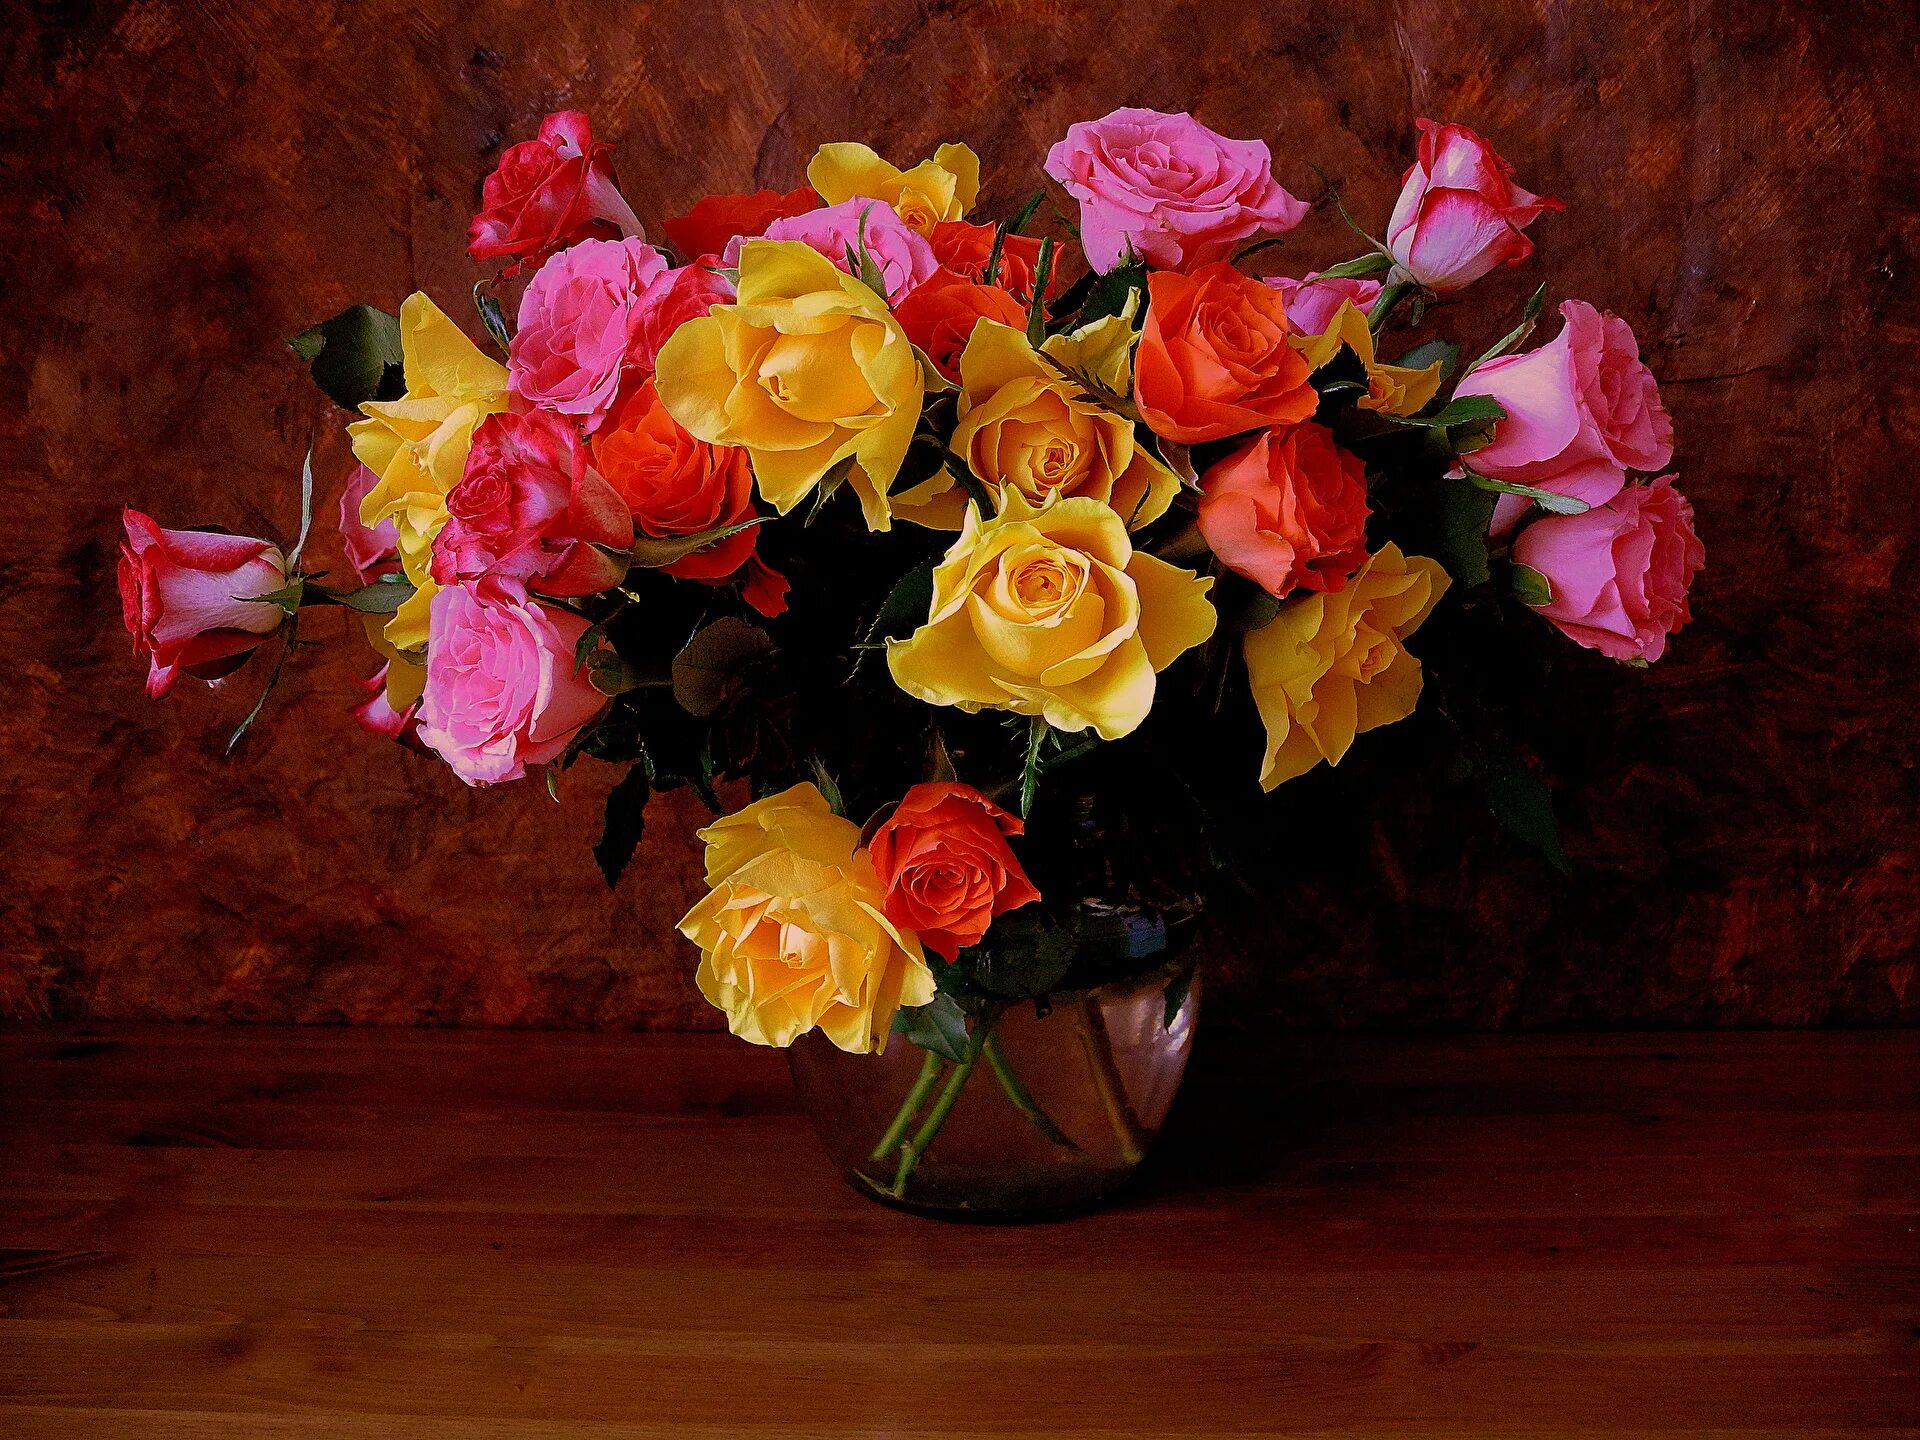 Красивый букет в вазе. Натюрморт. Шикарные цветы в вазе. Розы в вазе. Букеты роз в вазе на столе